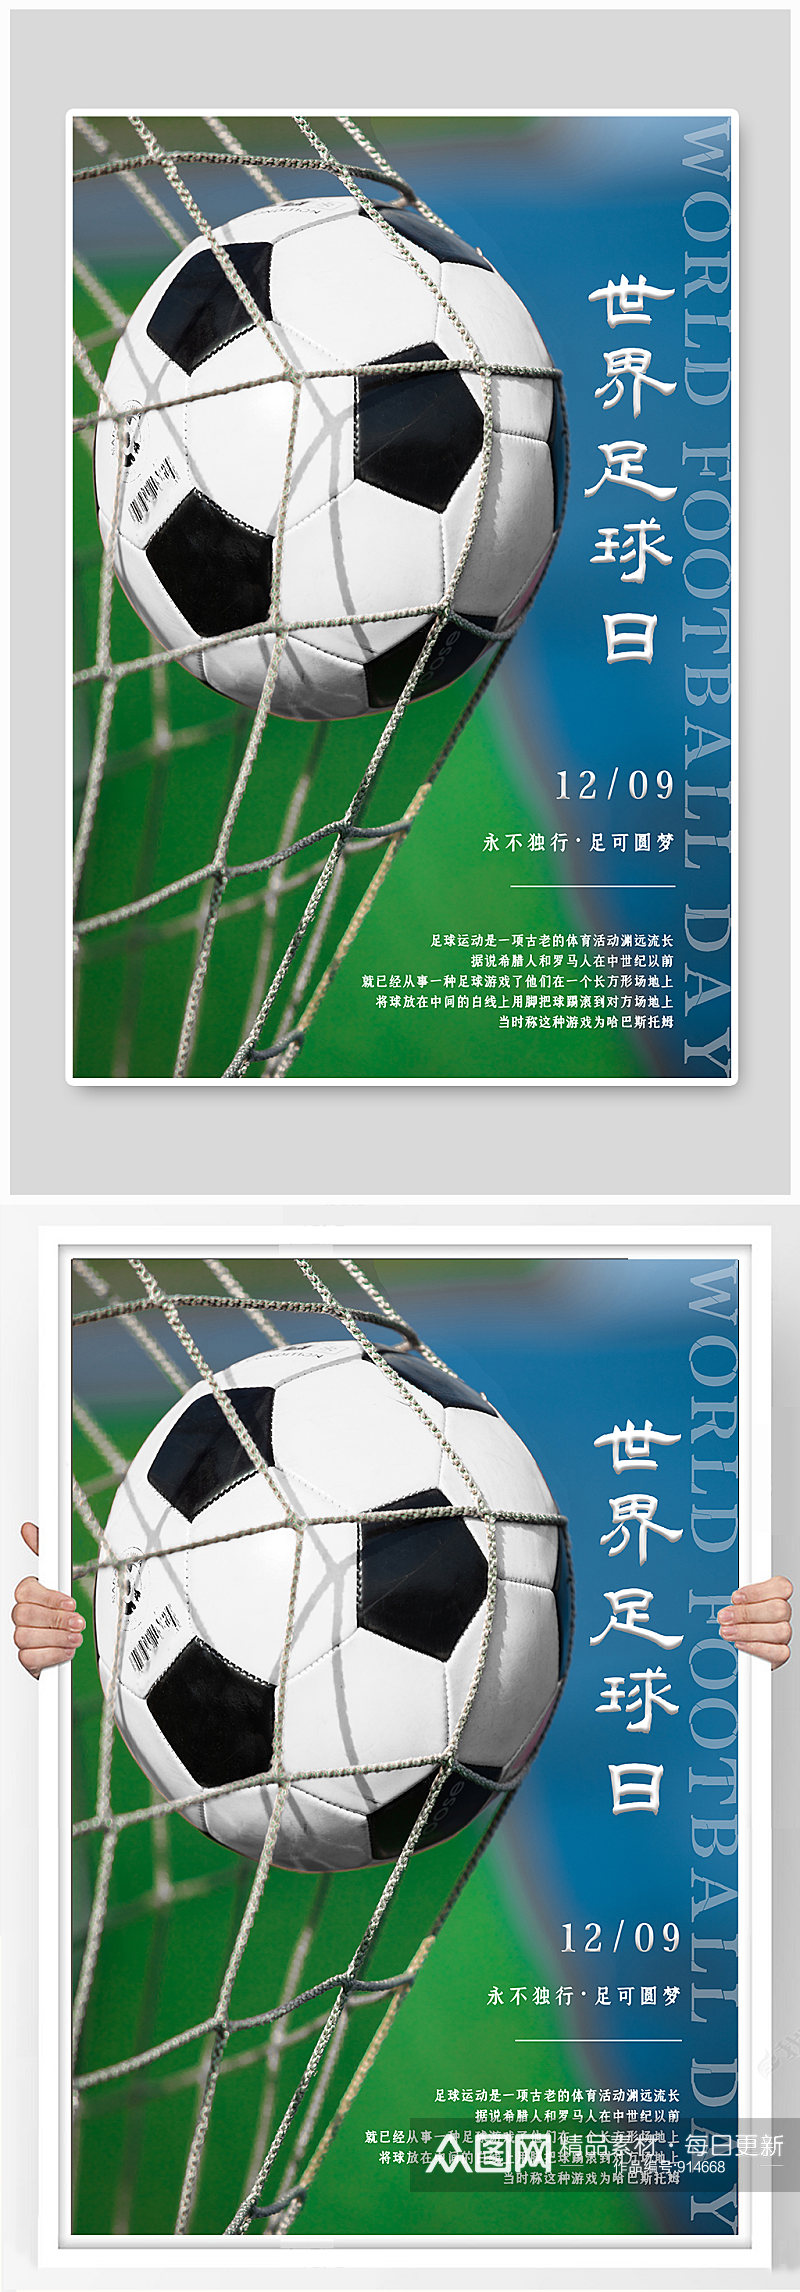 绿色简约世界足球日宣传海报素材